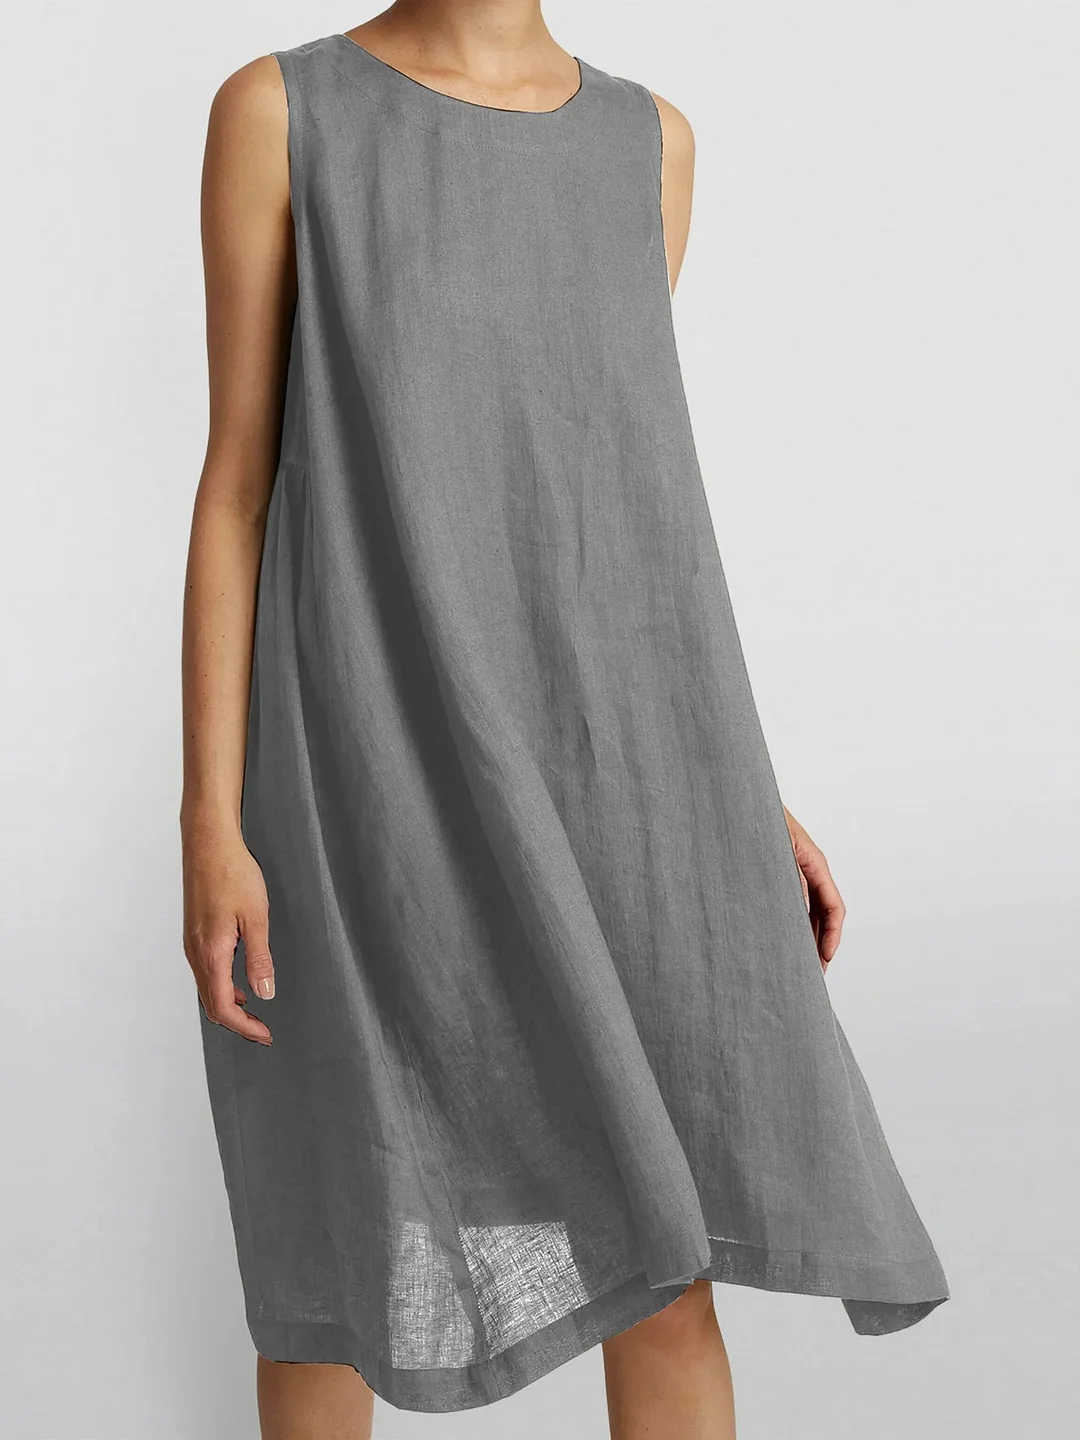 Cotton Linen Thin Sleeveless Midi Dress